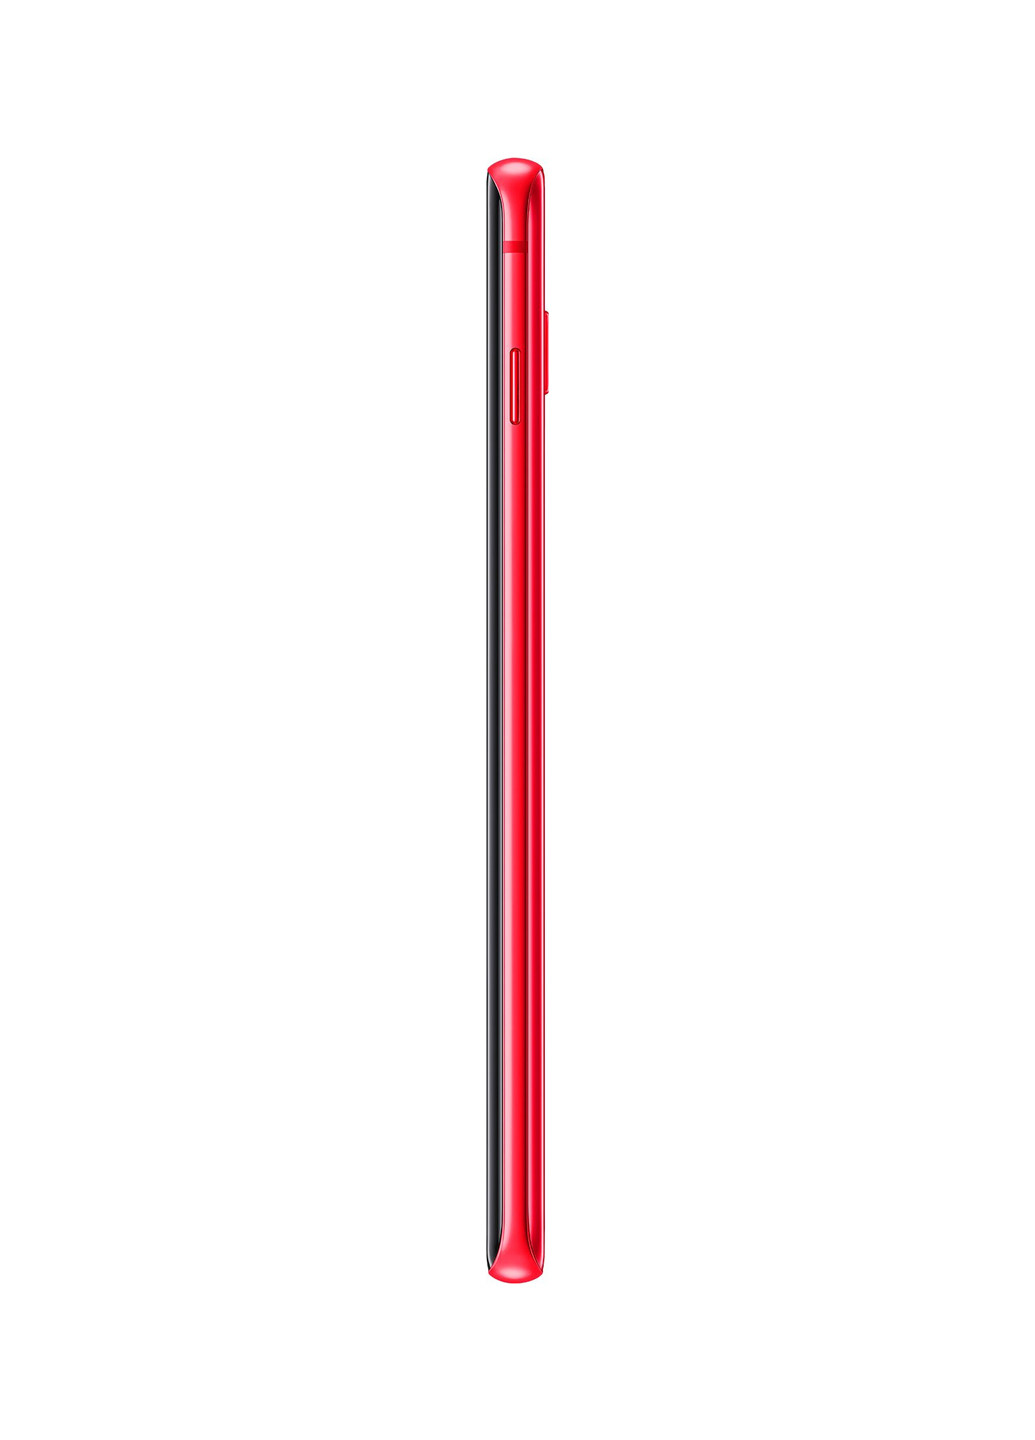 Смартфон Samsung Galaxy S10 8/128GB Red (SM-G973FZRDSEK) красный